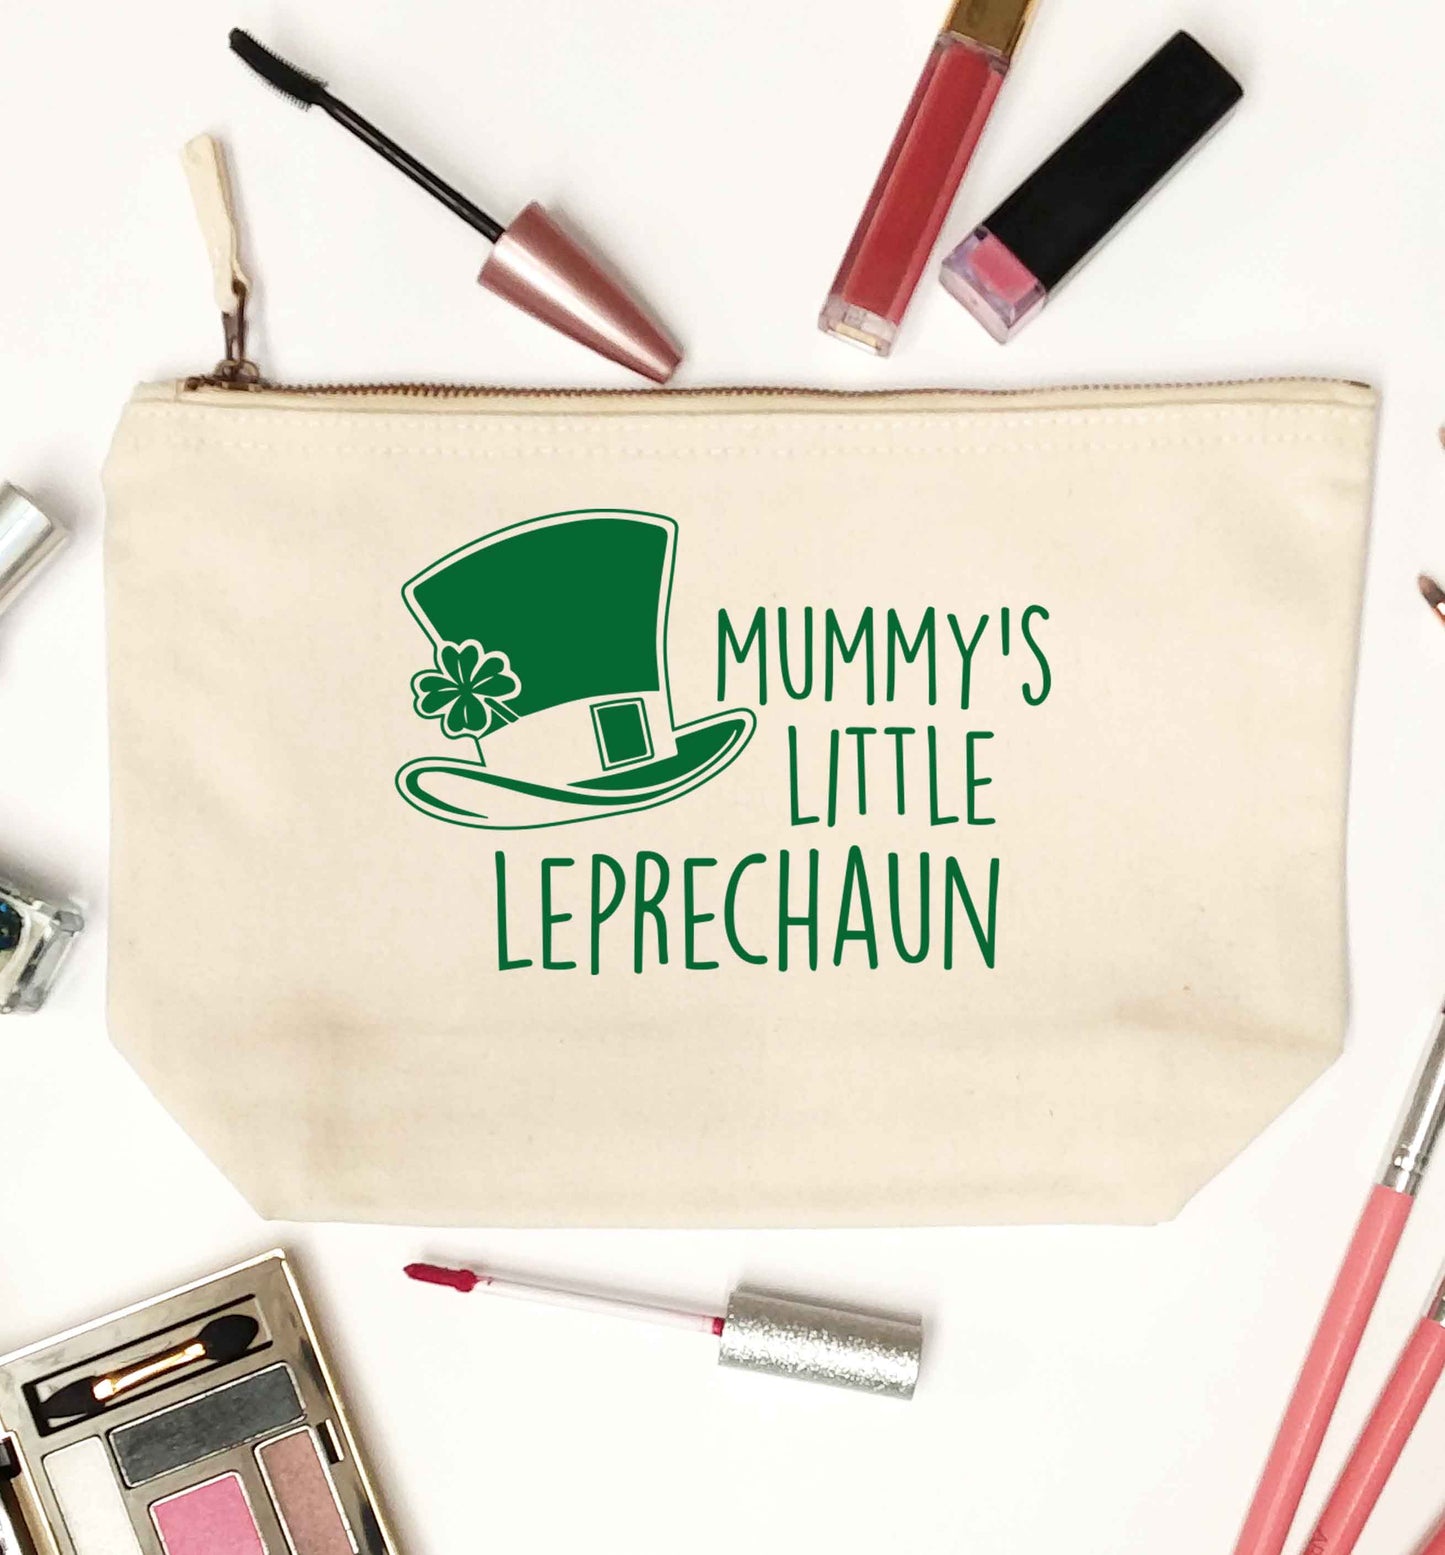 Mummy's little leprechaun natural makeup bag